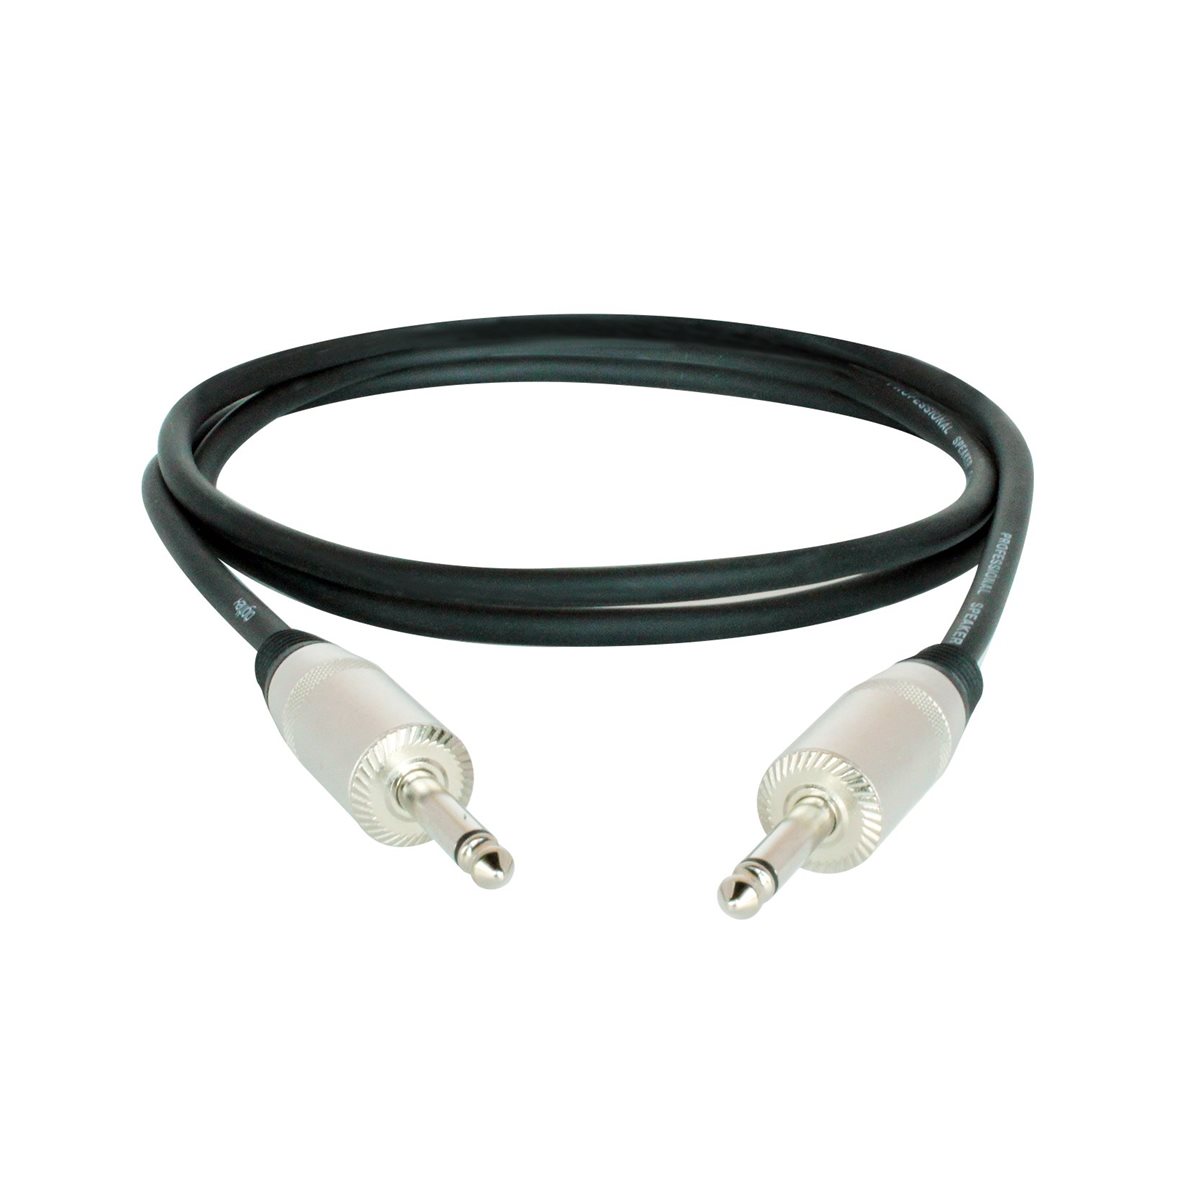 DIGIFLEX - HLSP-15 / 2-6 - HLSP Series, 1 / 4" Speaker Cables - 6 foot